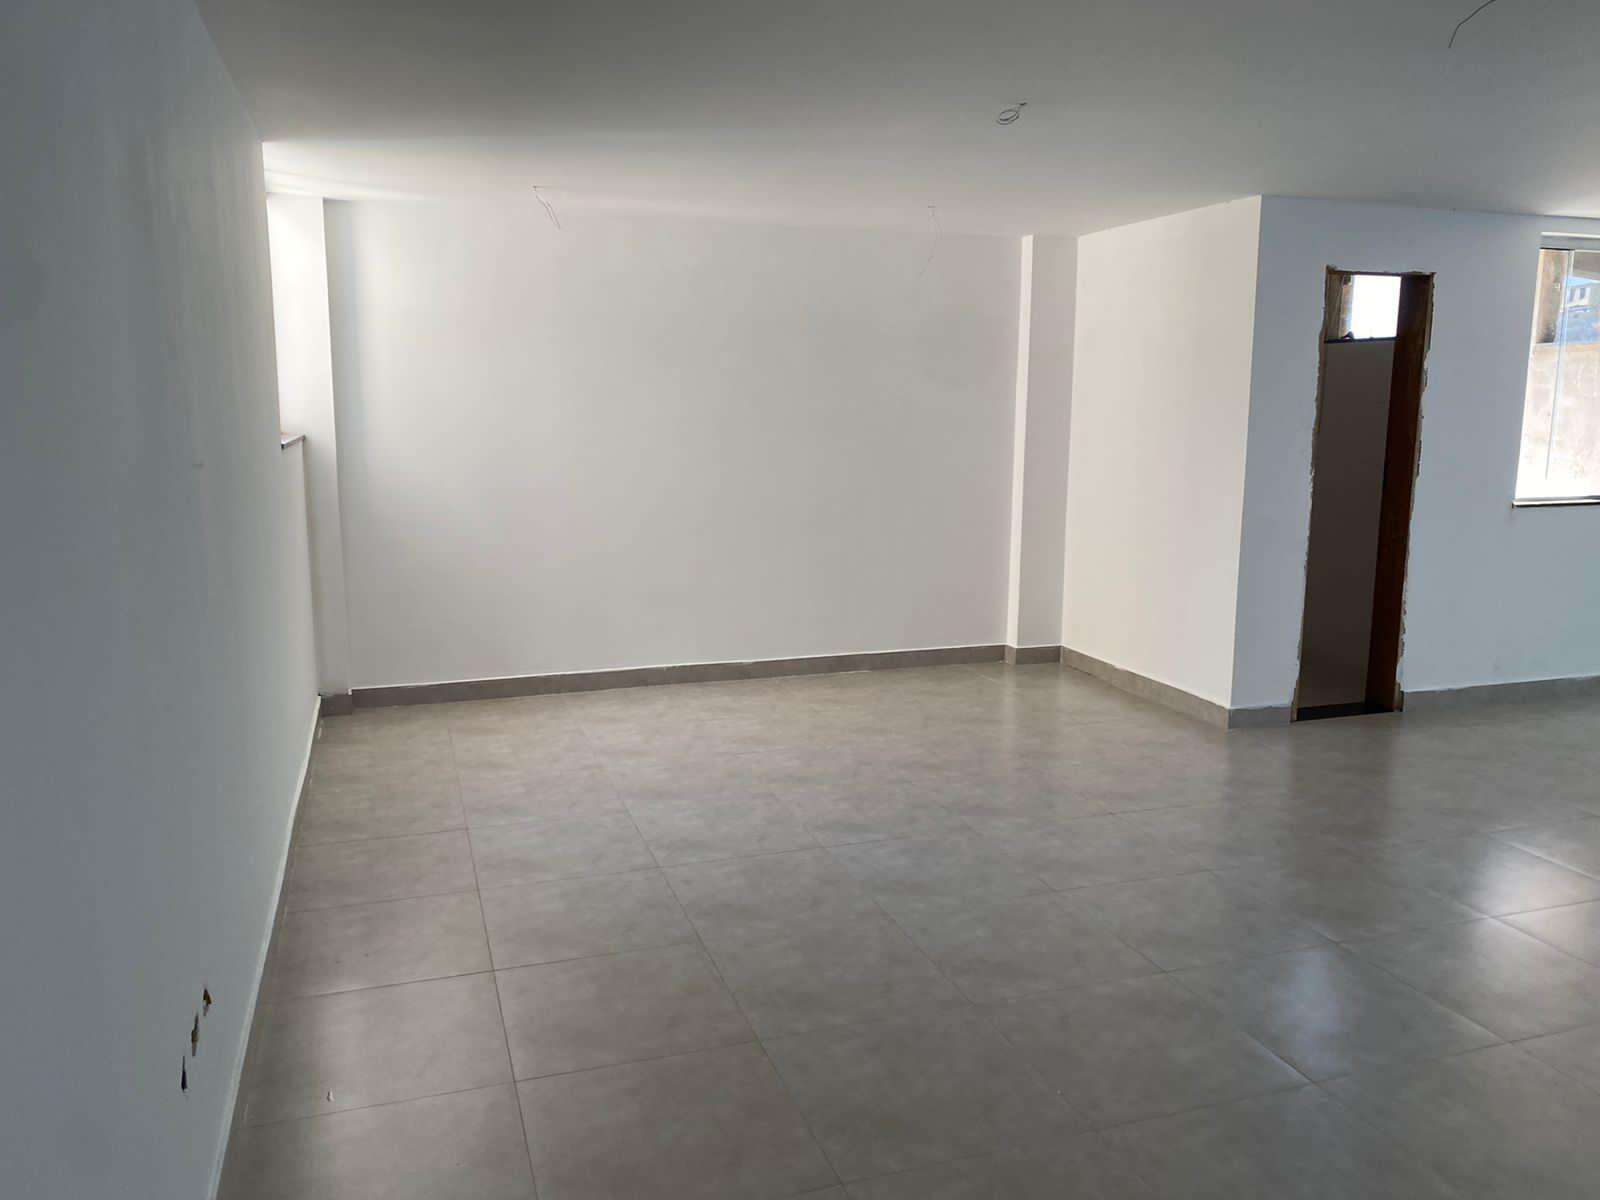 Sala para aluguel no Centro: 48484be0-7-whatsapp-image-2021-09-29-at-15.52.10.jpeg